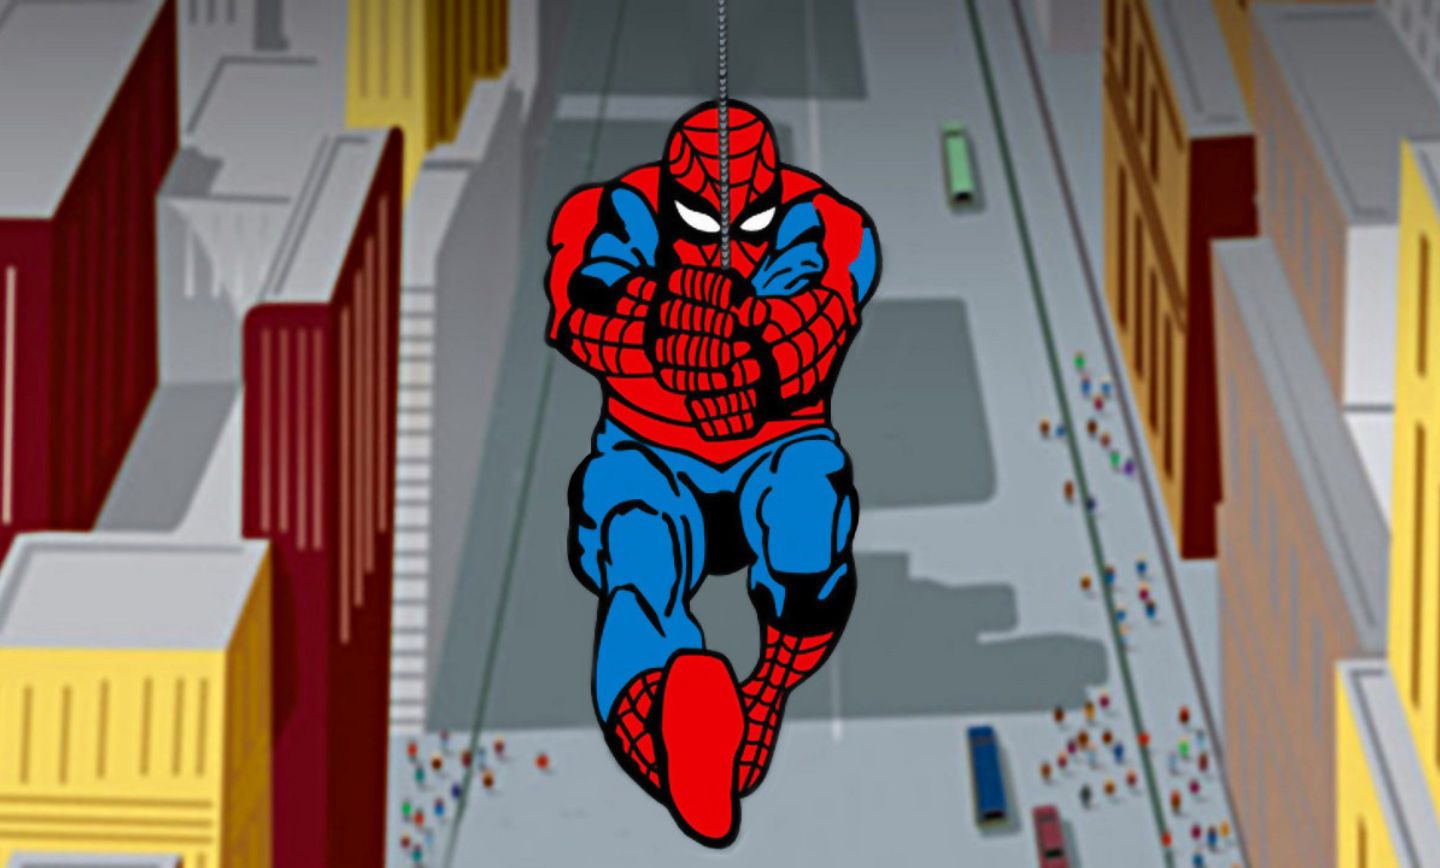 5. مرد عنکبوتی 1967 (1967 Spider-Man)